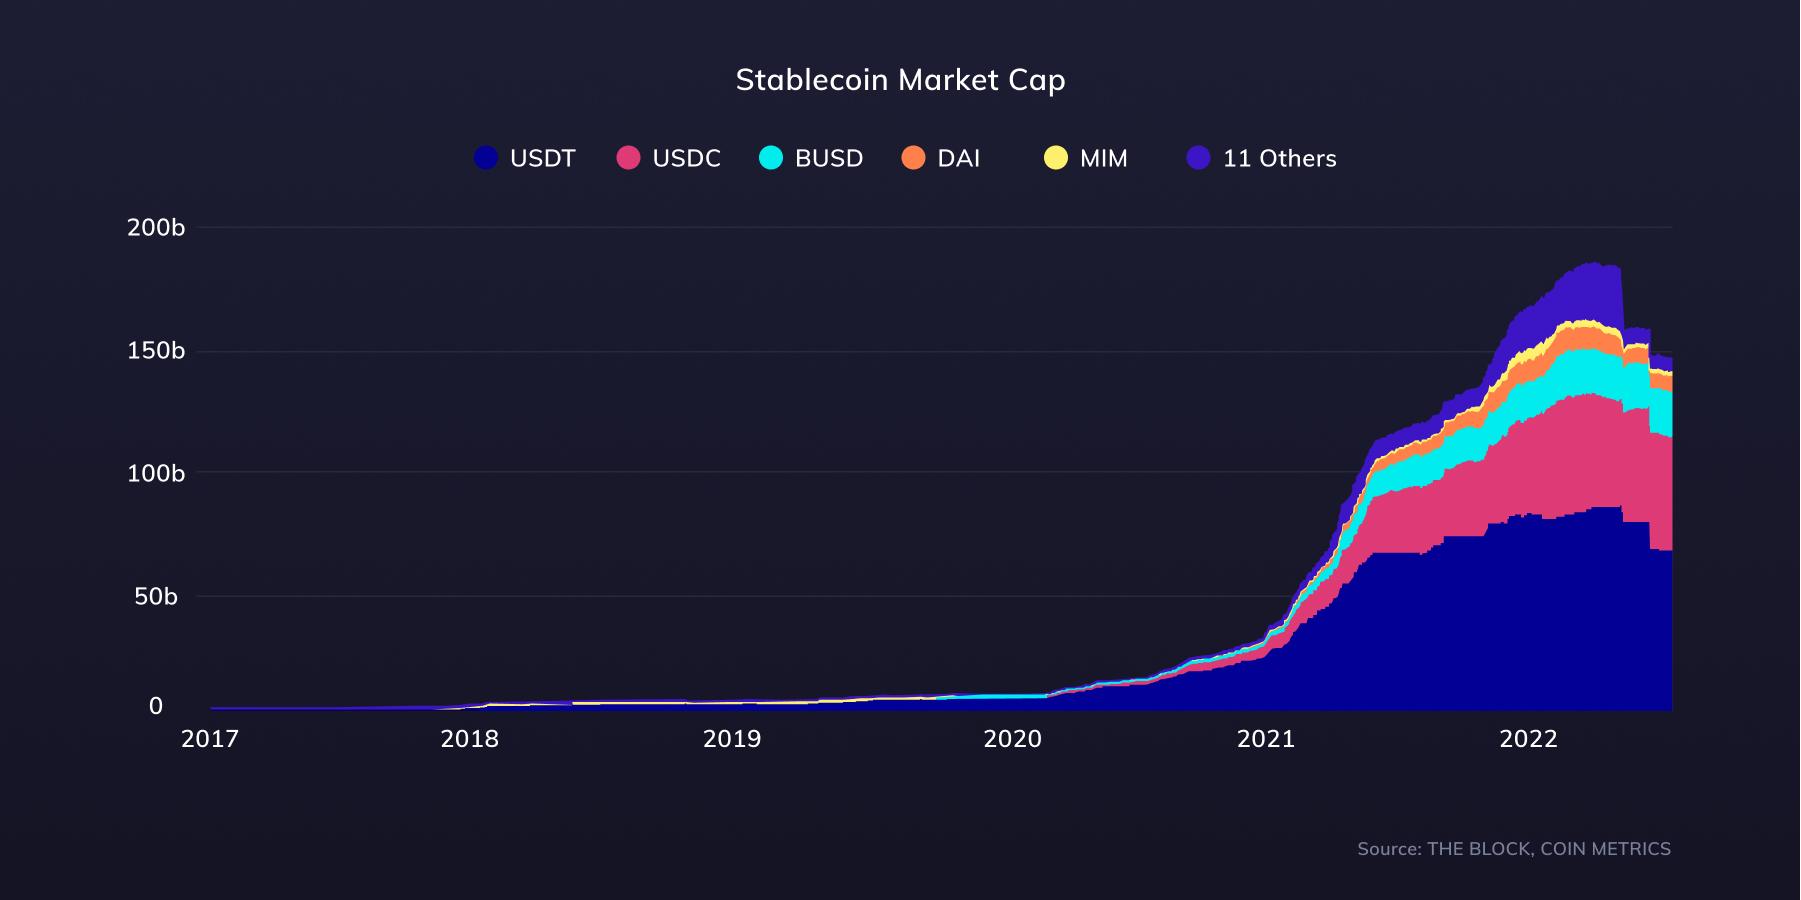 Stablecoin market cap since 2017